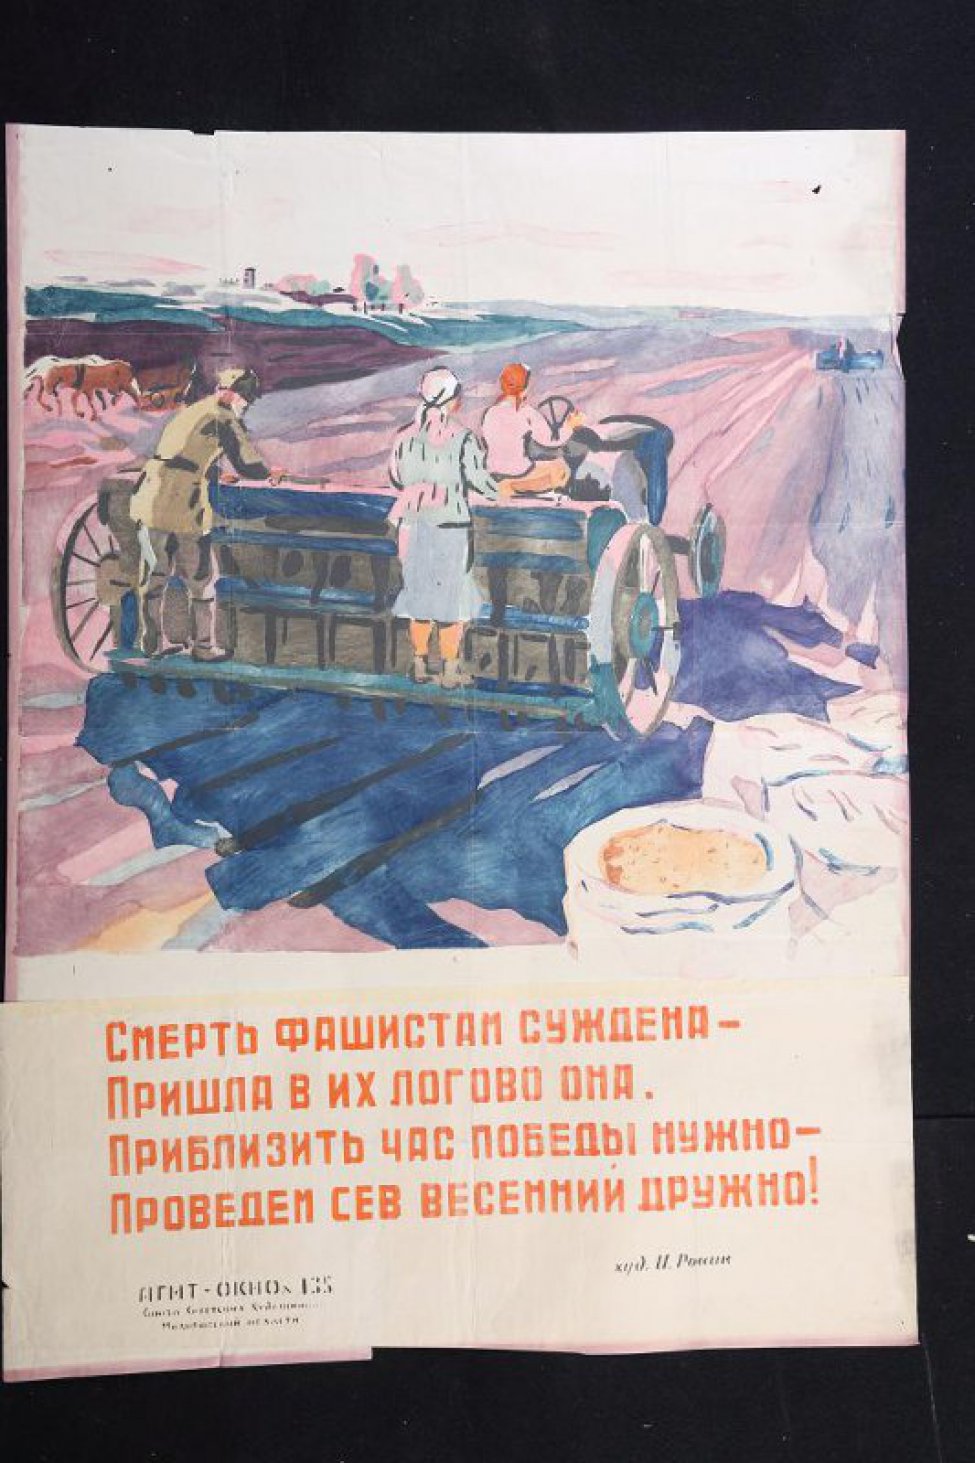 Изображено: по полю едет сеялка, на которой работают  мужчина и женщина. Стоят мешки с зерном, текст: " смерть фашистам суждена- пришла в их логово она..."